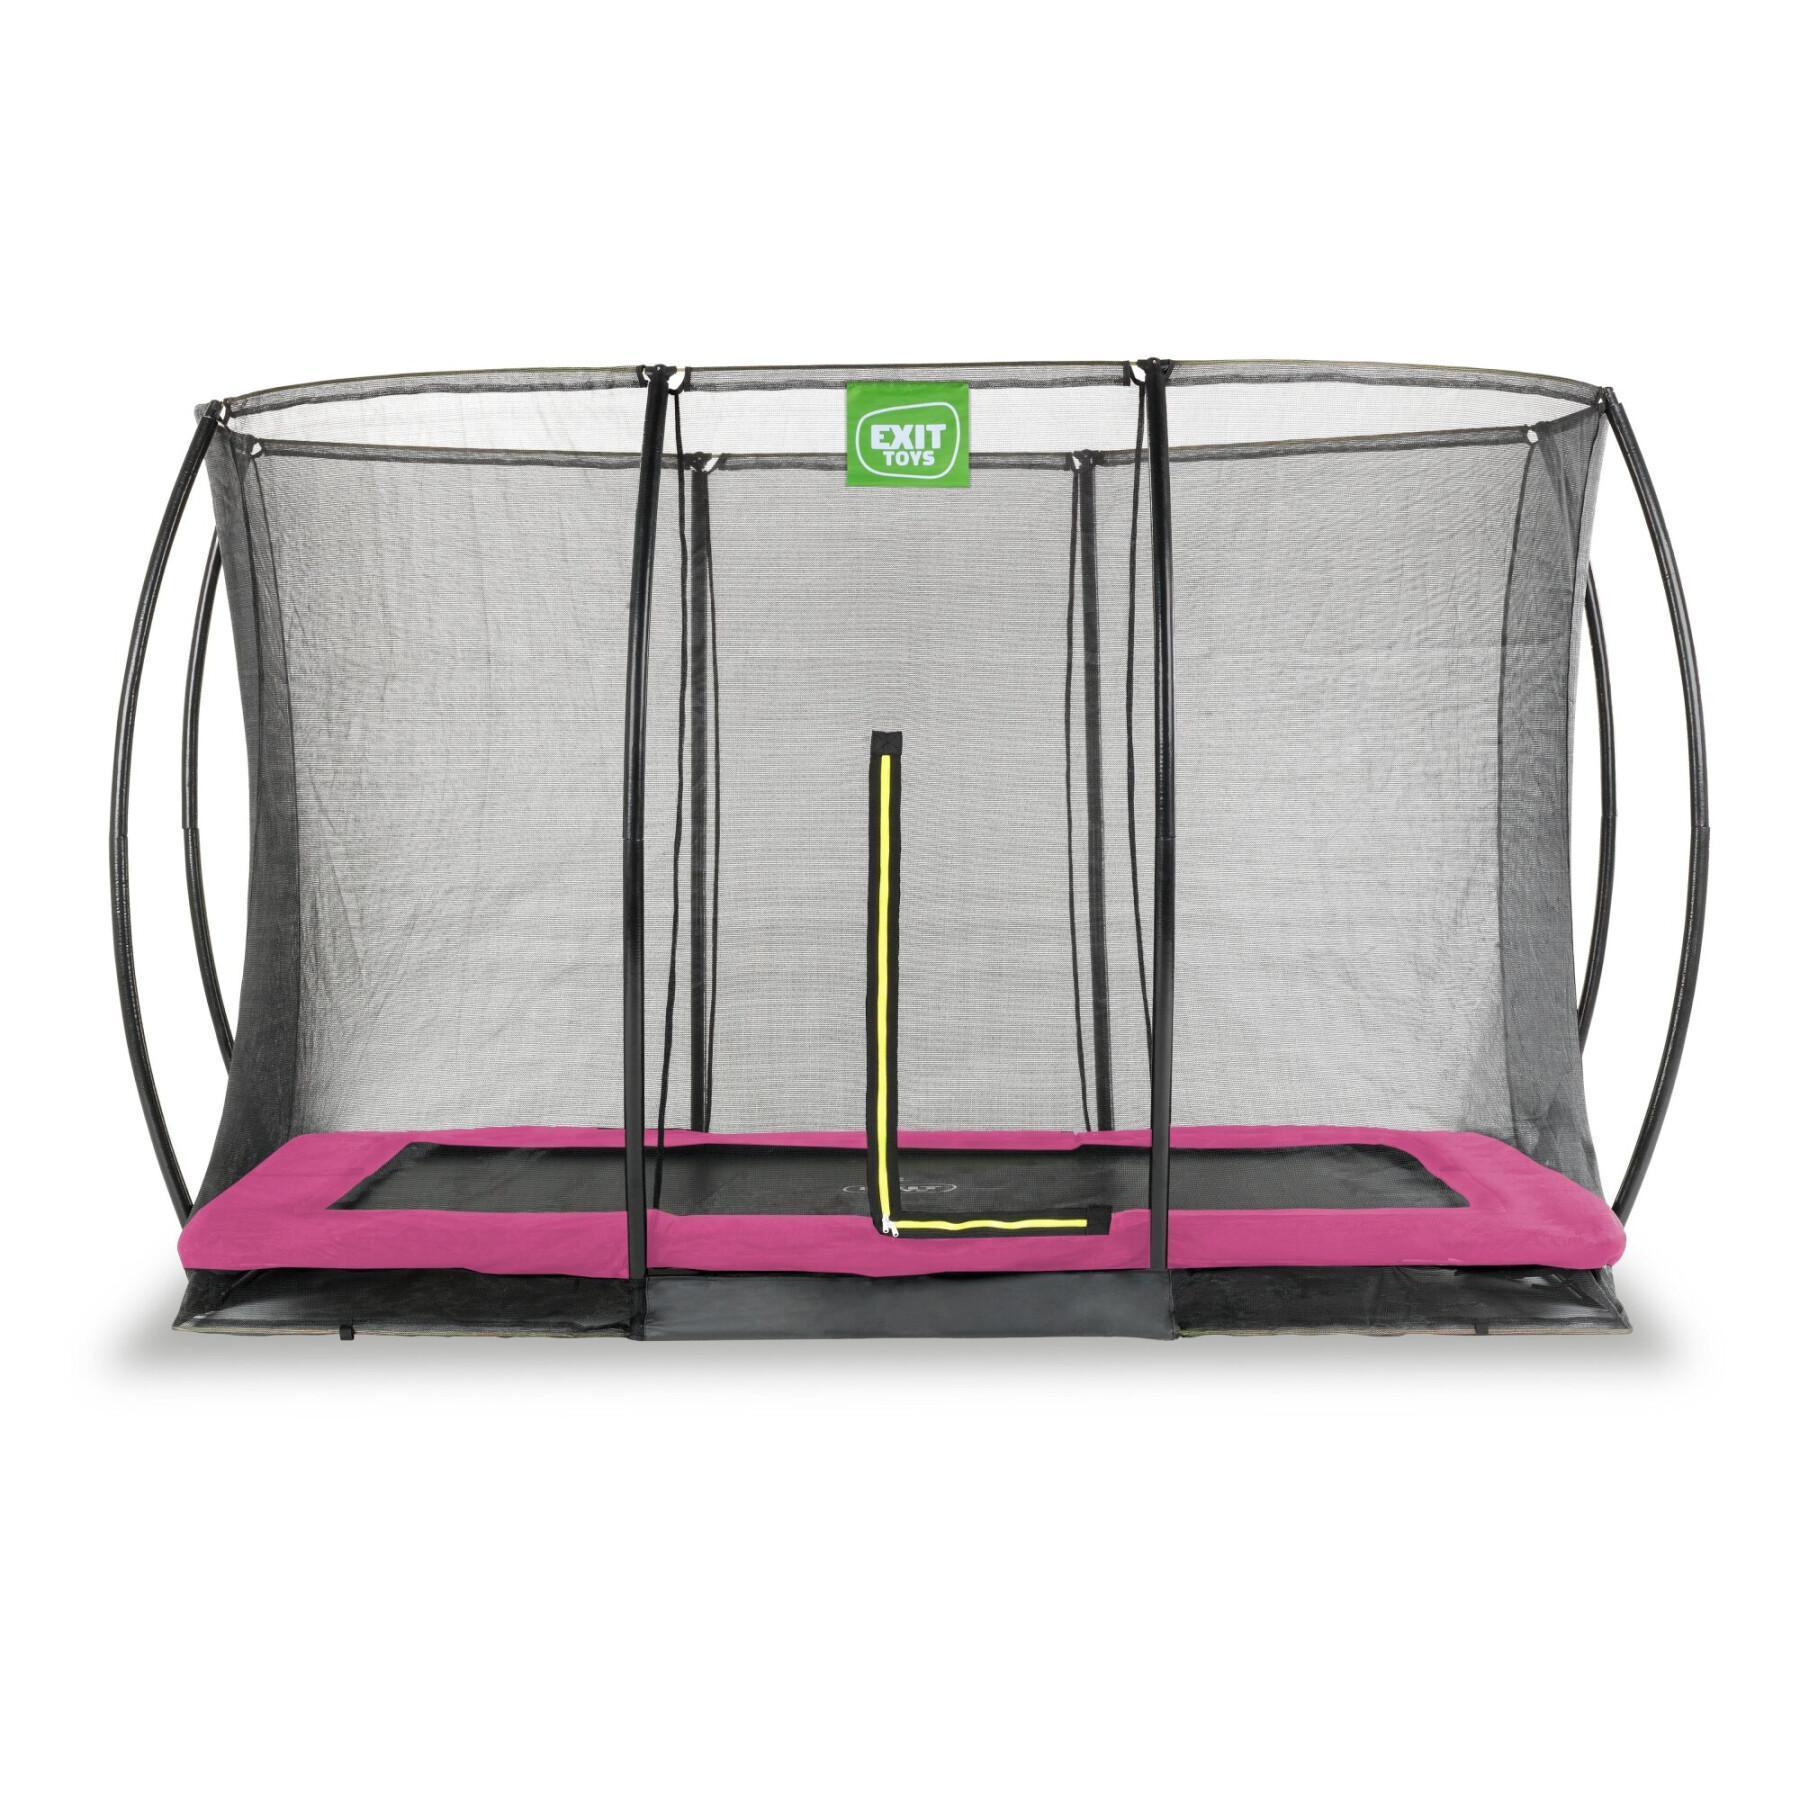 Ondergrondse trampoline met veiligheidsnet Exit Toys Silhouette 244 x 366 cm